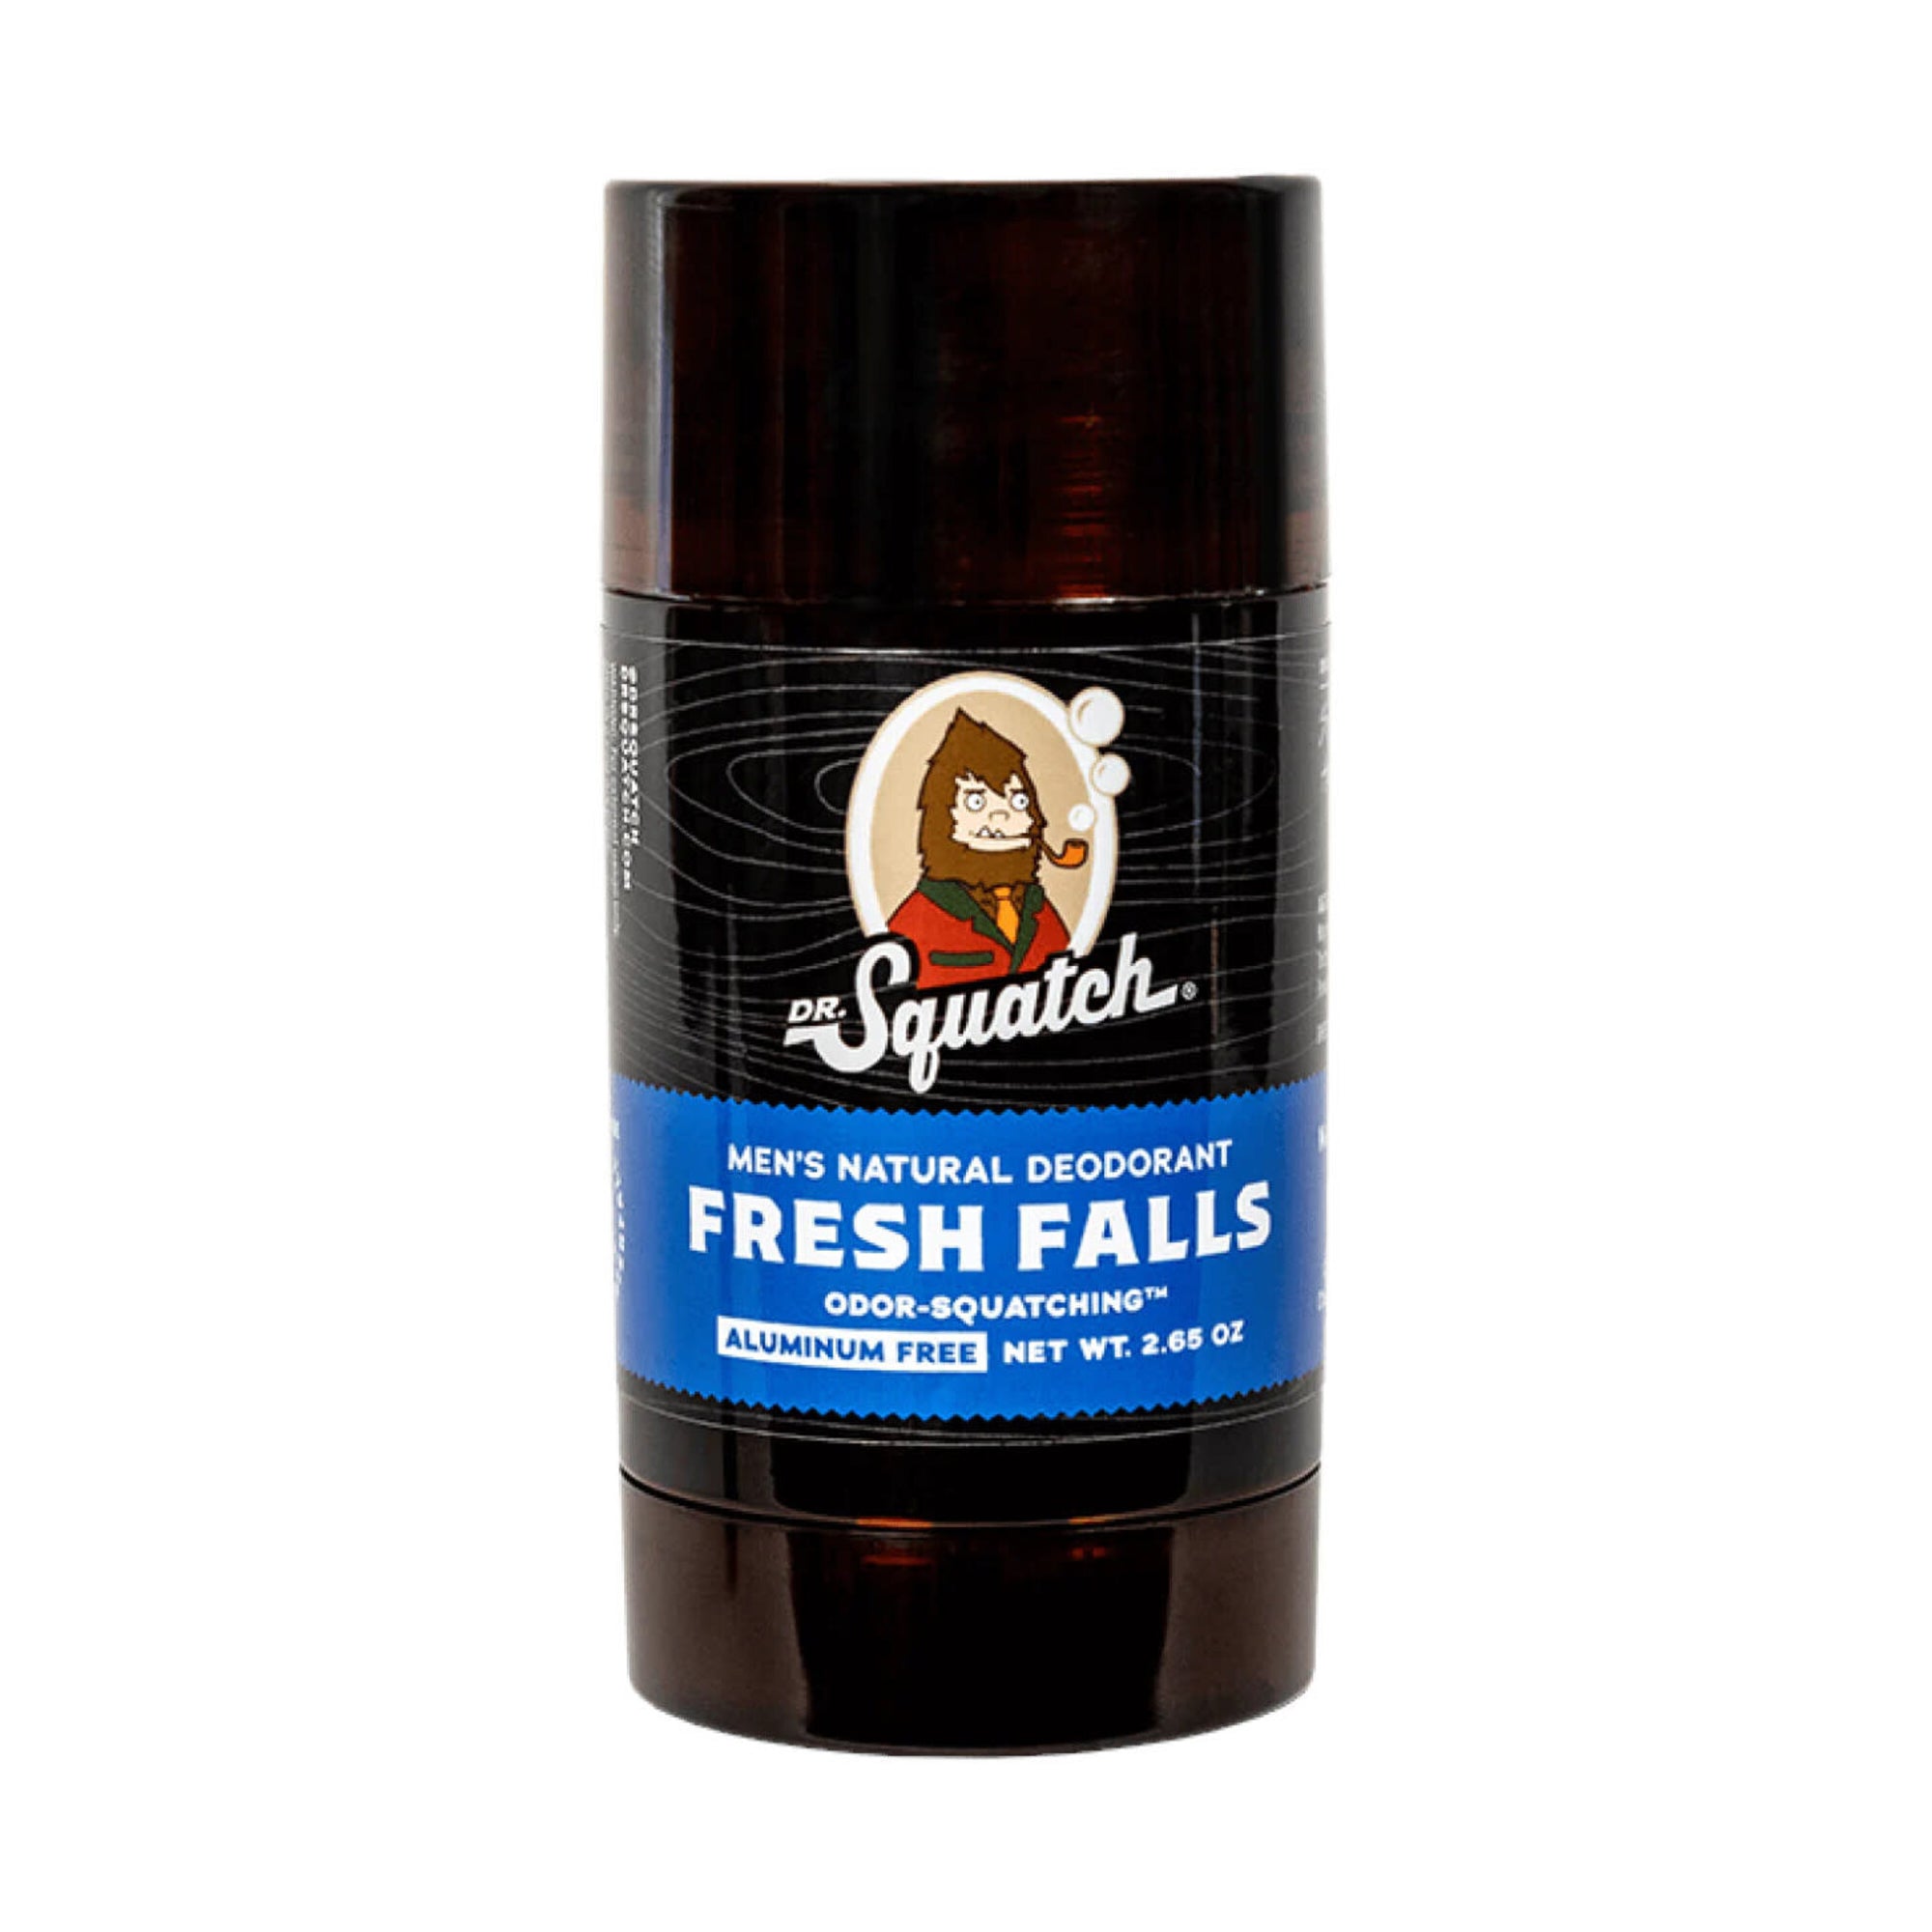 Dr. Squatch Fresh Falls Deodorant / 2.6OZ